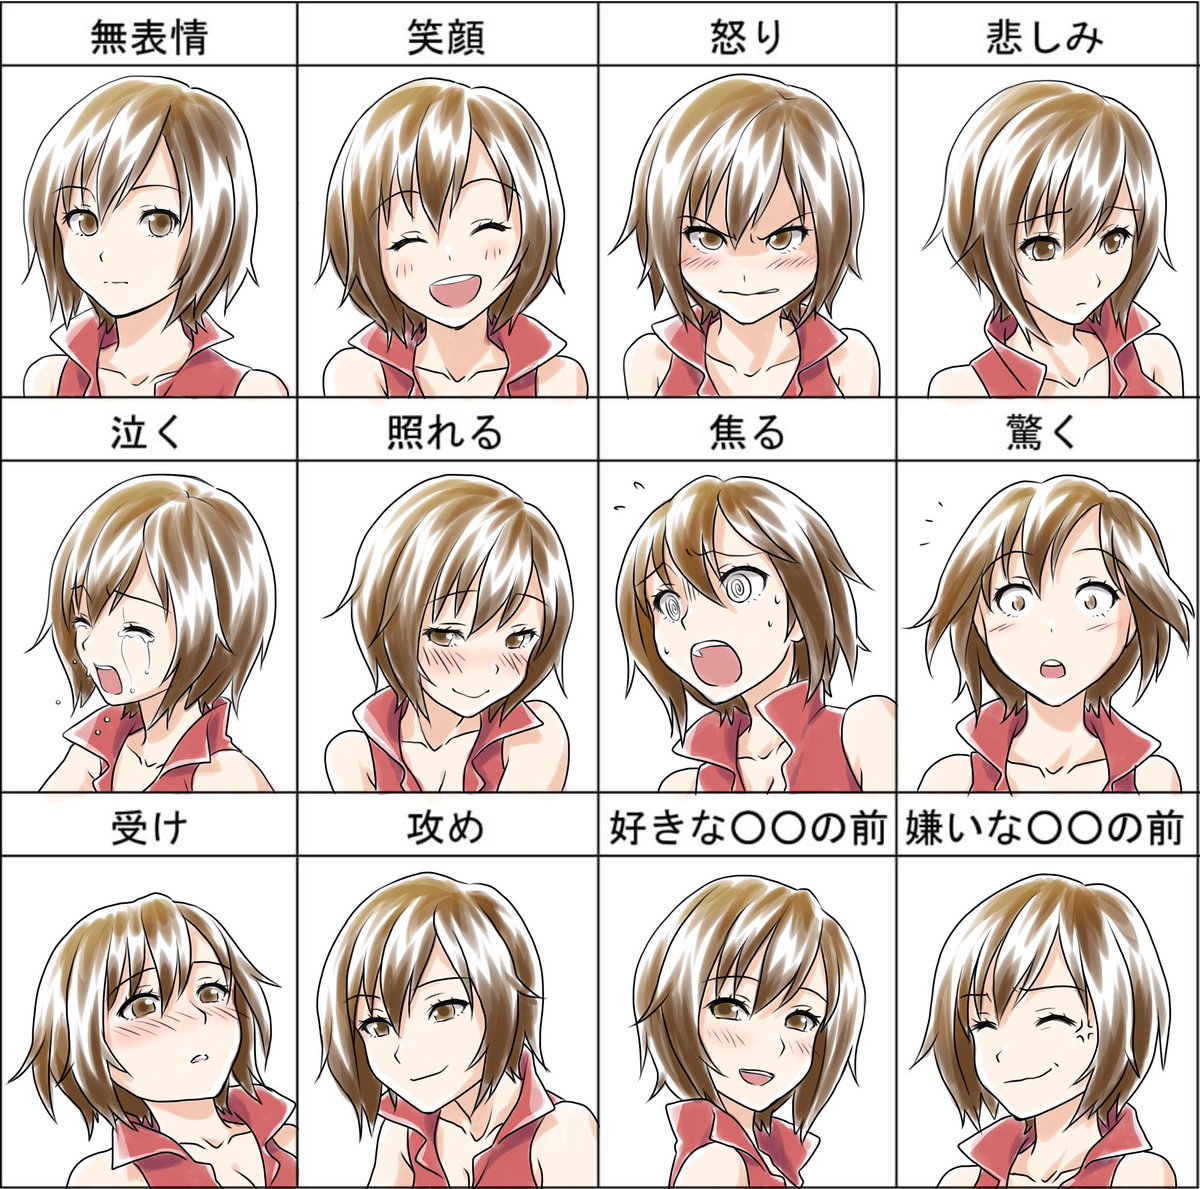 桐田アサミ A Twitter Meikoで表情練習 こんないろんな表情描いたの初めてかもしれない どのmeikoさんがお好みでしょうか